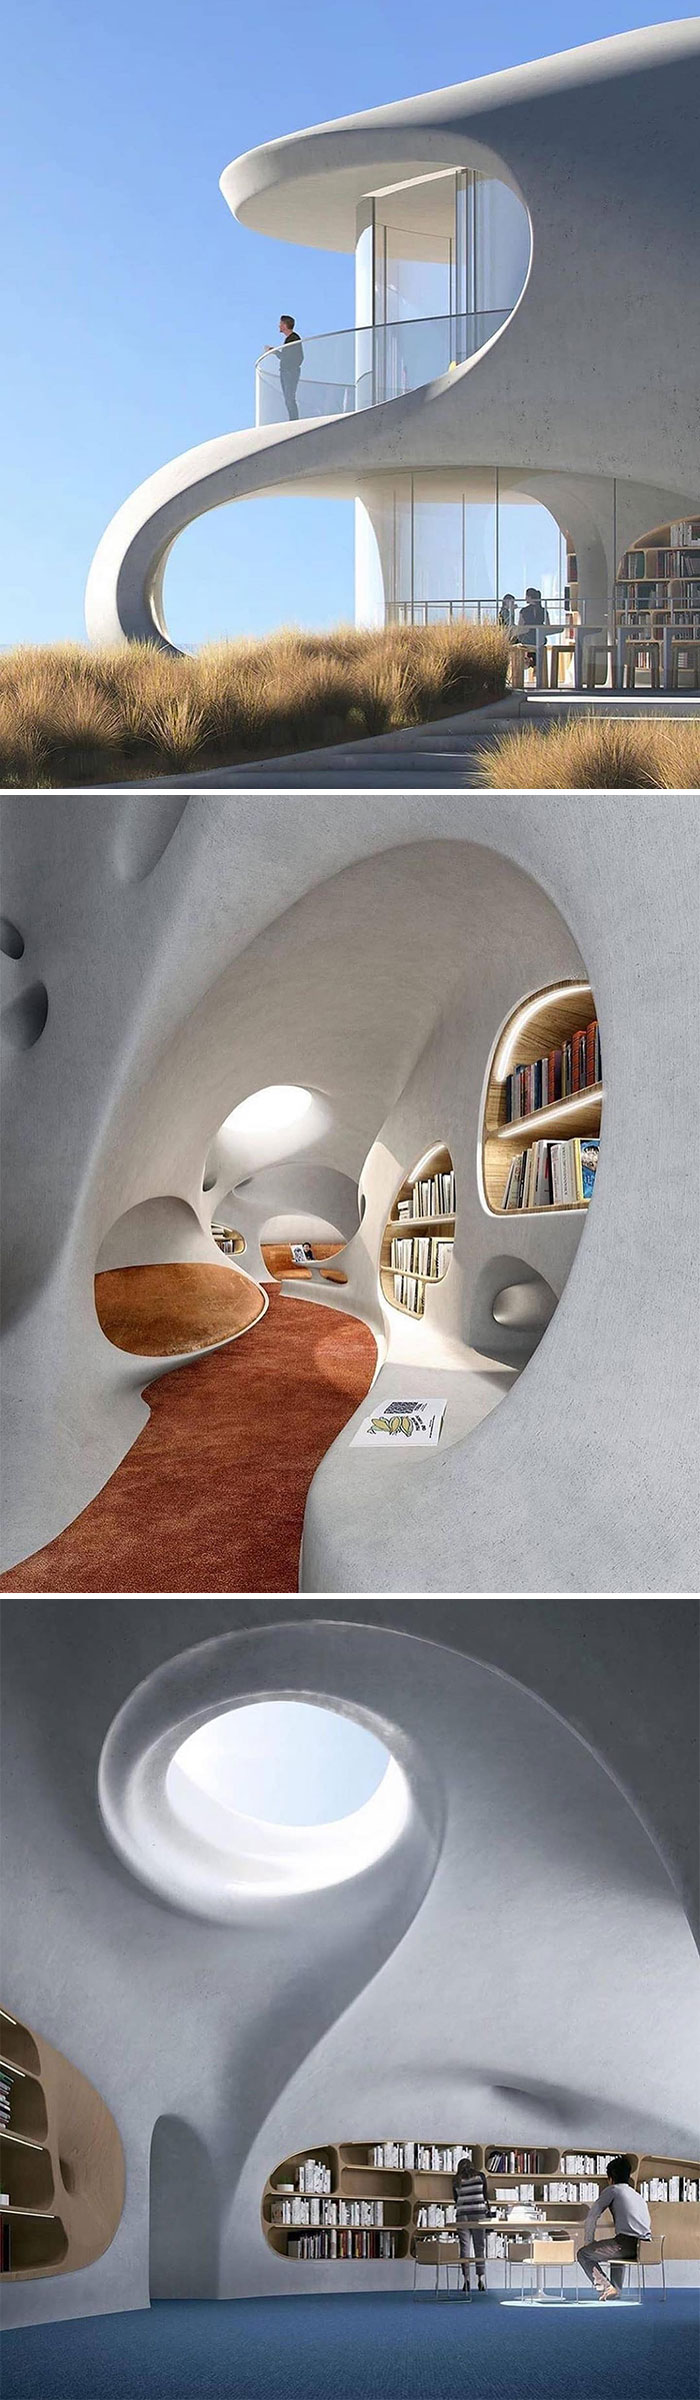 Biblioteca de agujero de gusano por Mad Architects